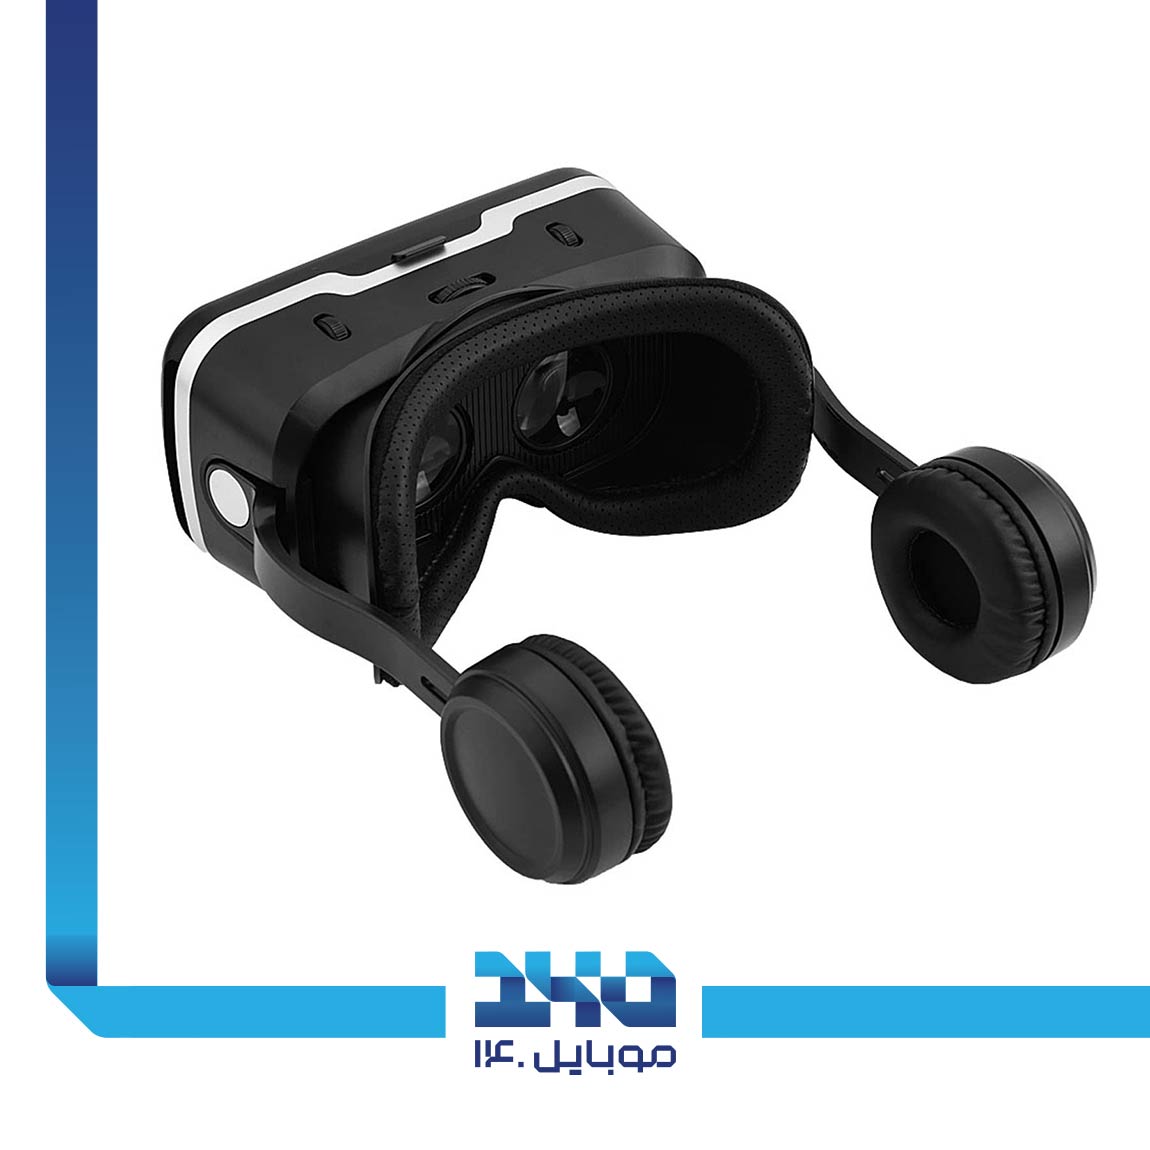 ShineCon SC-G04E Virtual Reality Headset 3